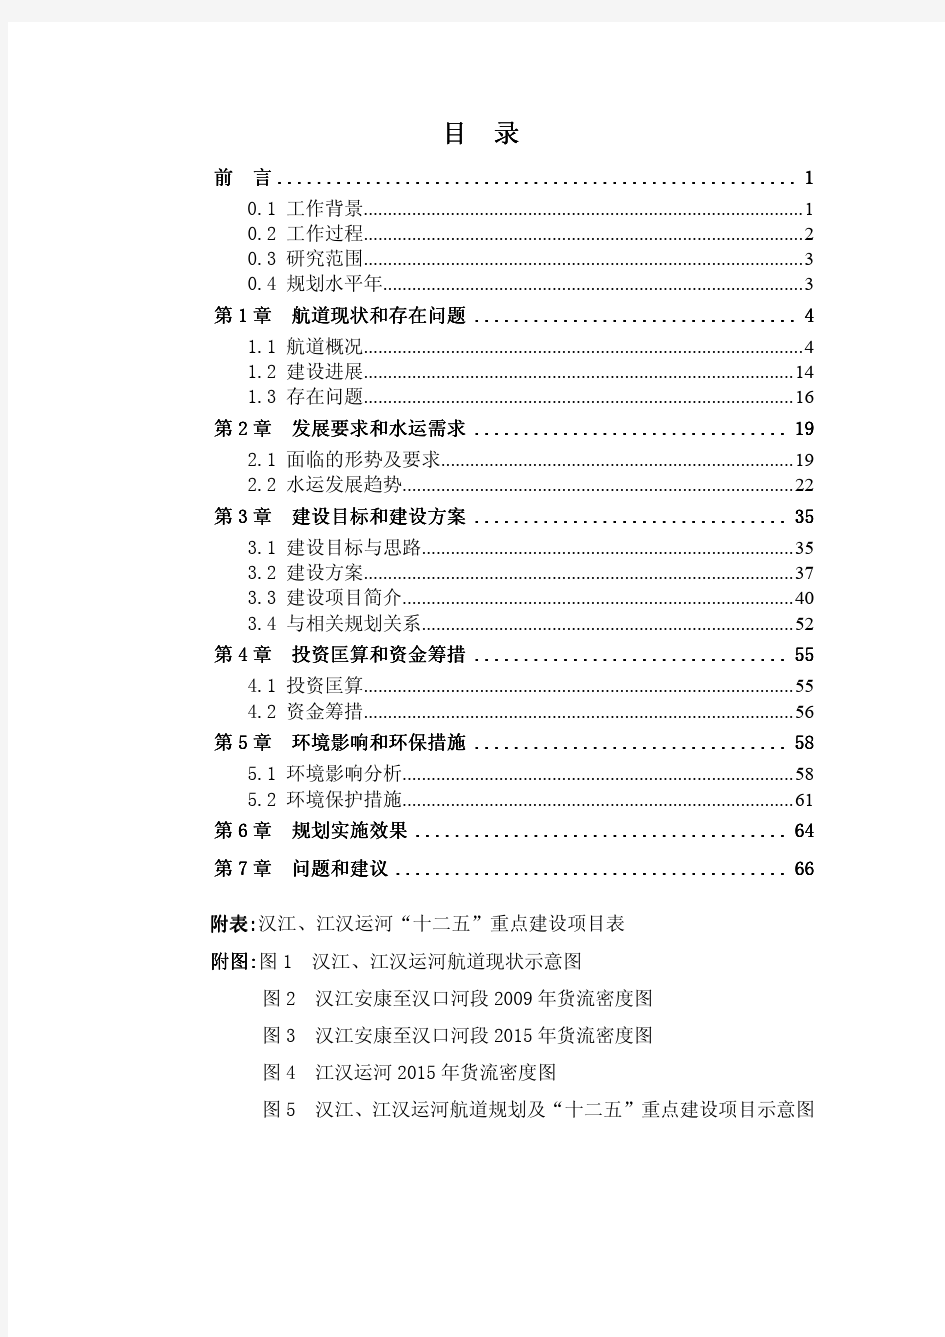 汉江、江汉运河高等级航道建设方案(2011-2015)修订本